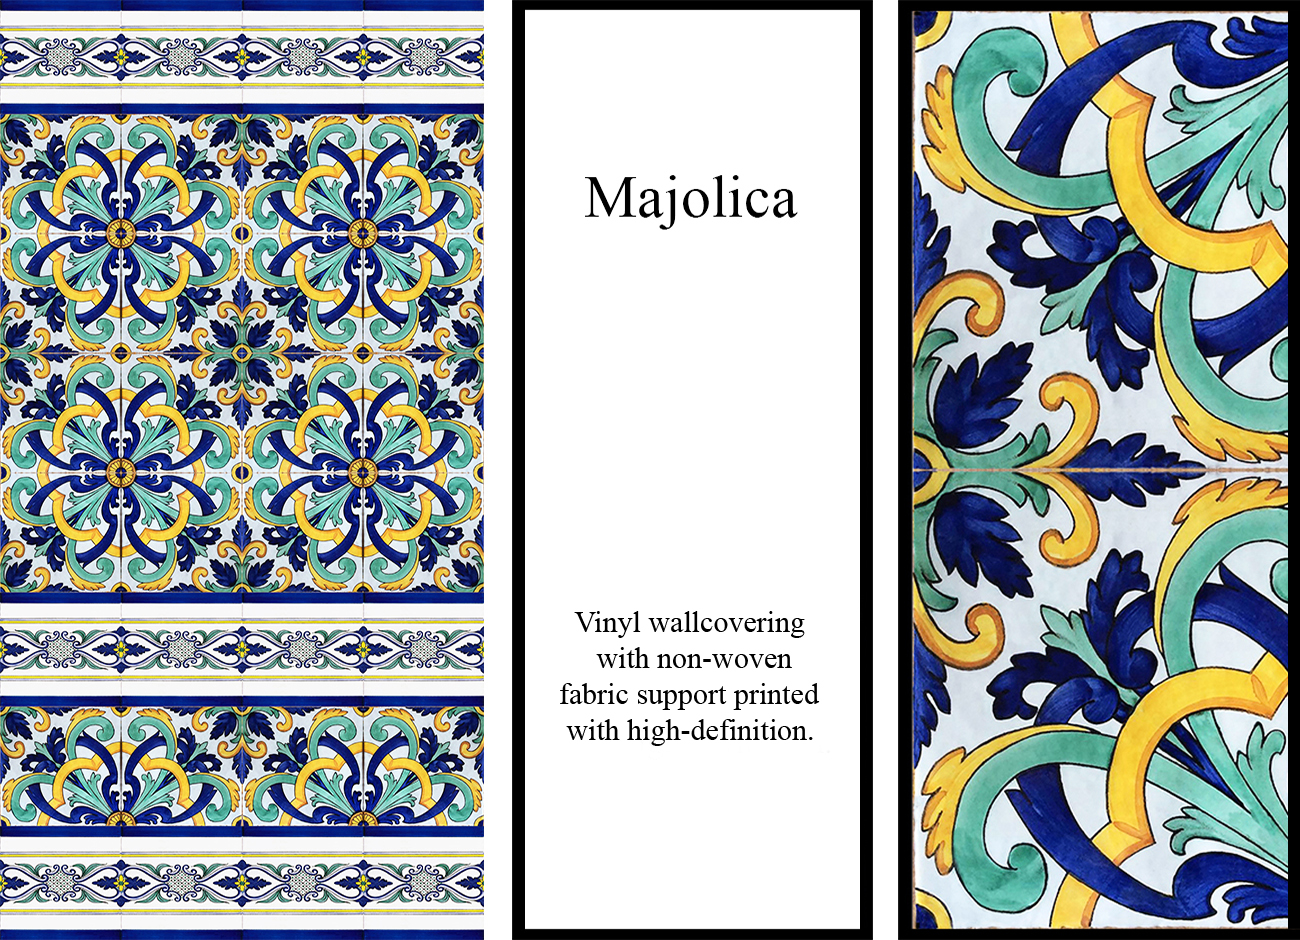 Carta da parati con maioliche a texture floreale dai colori blu, verde e giallo su fondo bianco